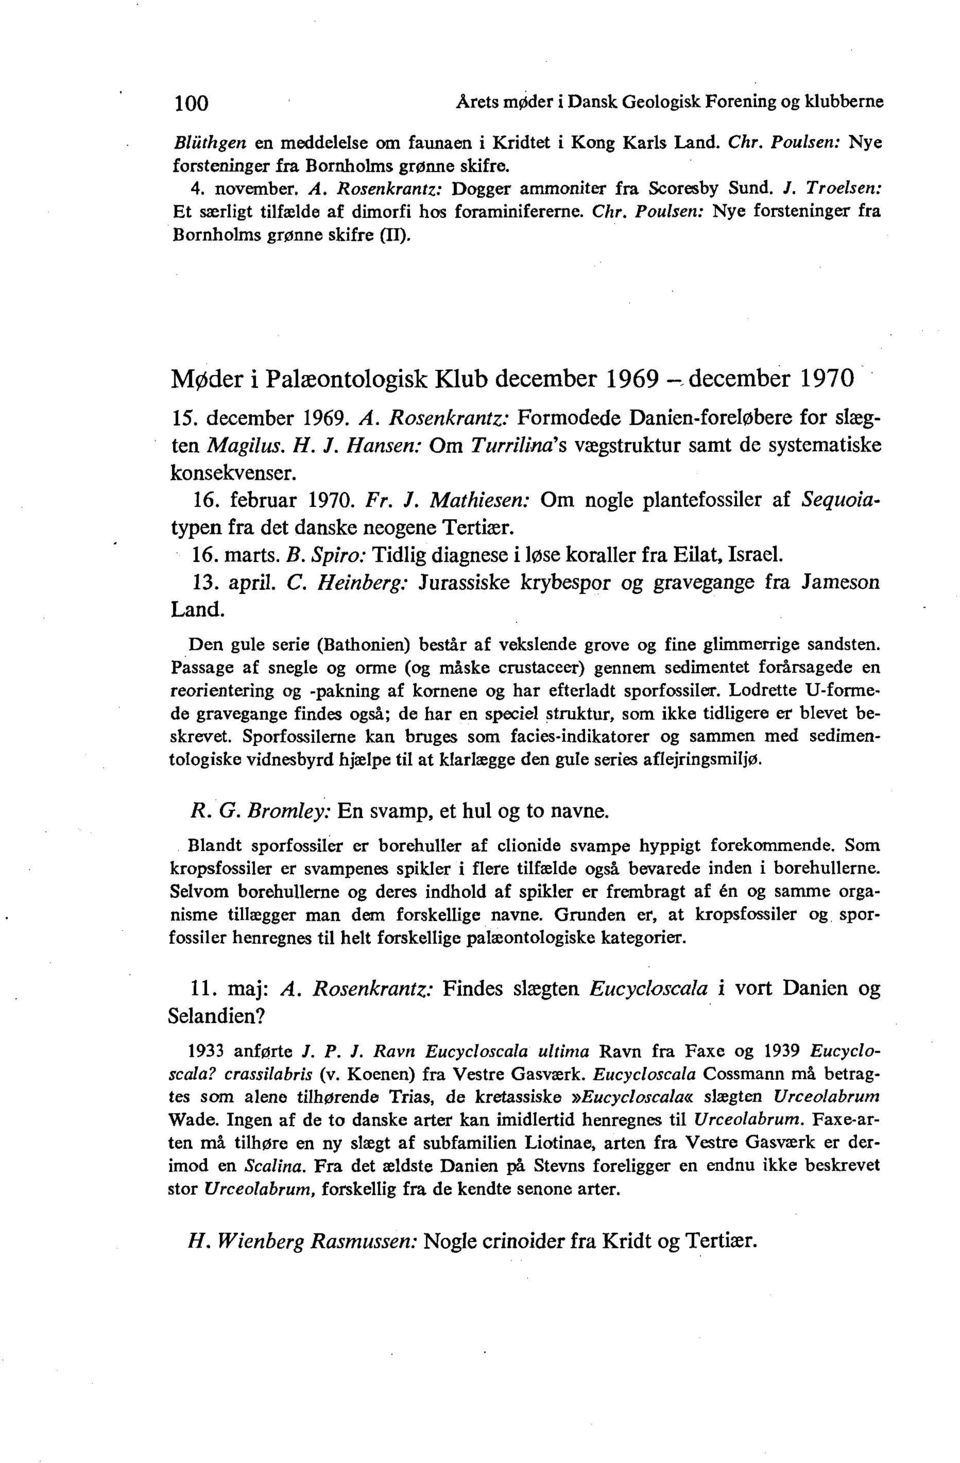 Møder i Palæontologisk Klub december 1969 -.december 1970 15. december 1969. A. Rosenkrantz: Formodede Danien-foreløbere for slægten Magilus. H. J.